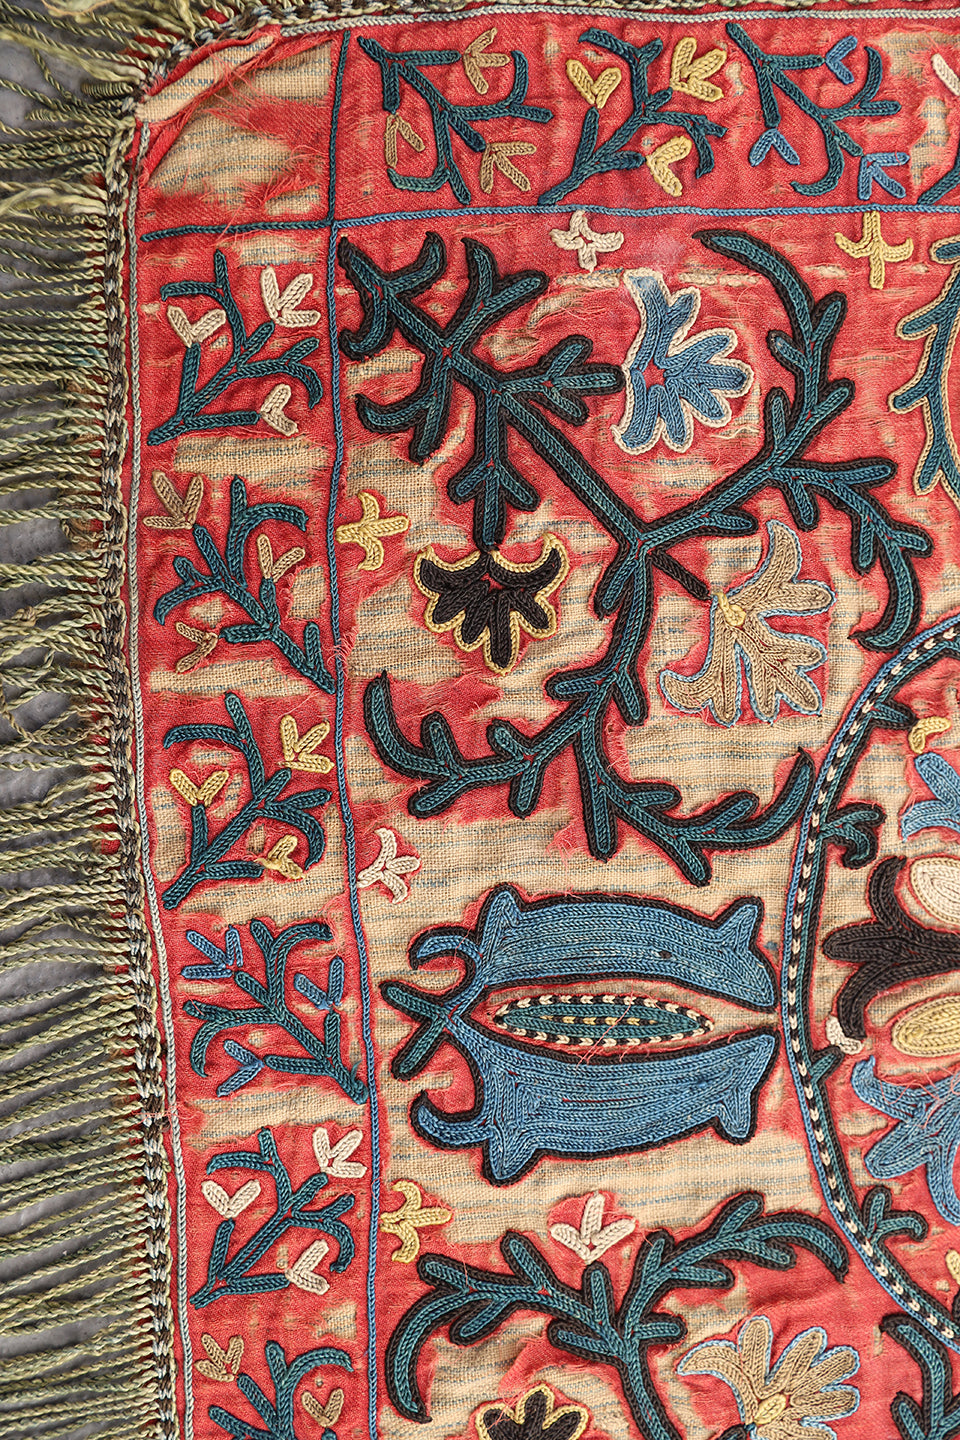 1'5"x1'5" Antique Collectable Afghan Uzbek Laqai Home Decor Textile